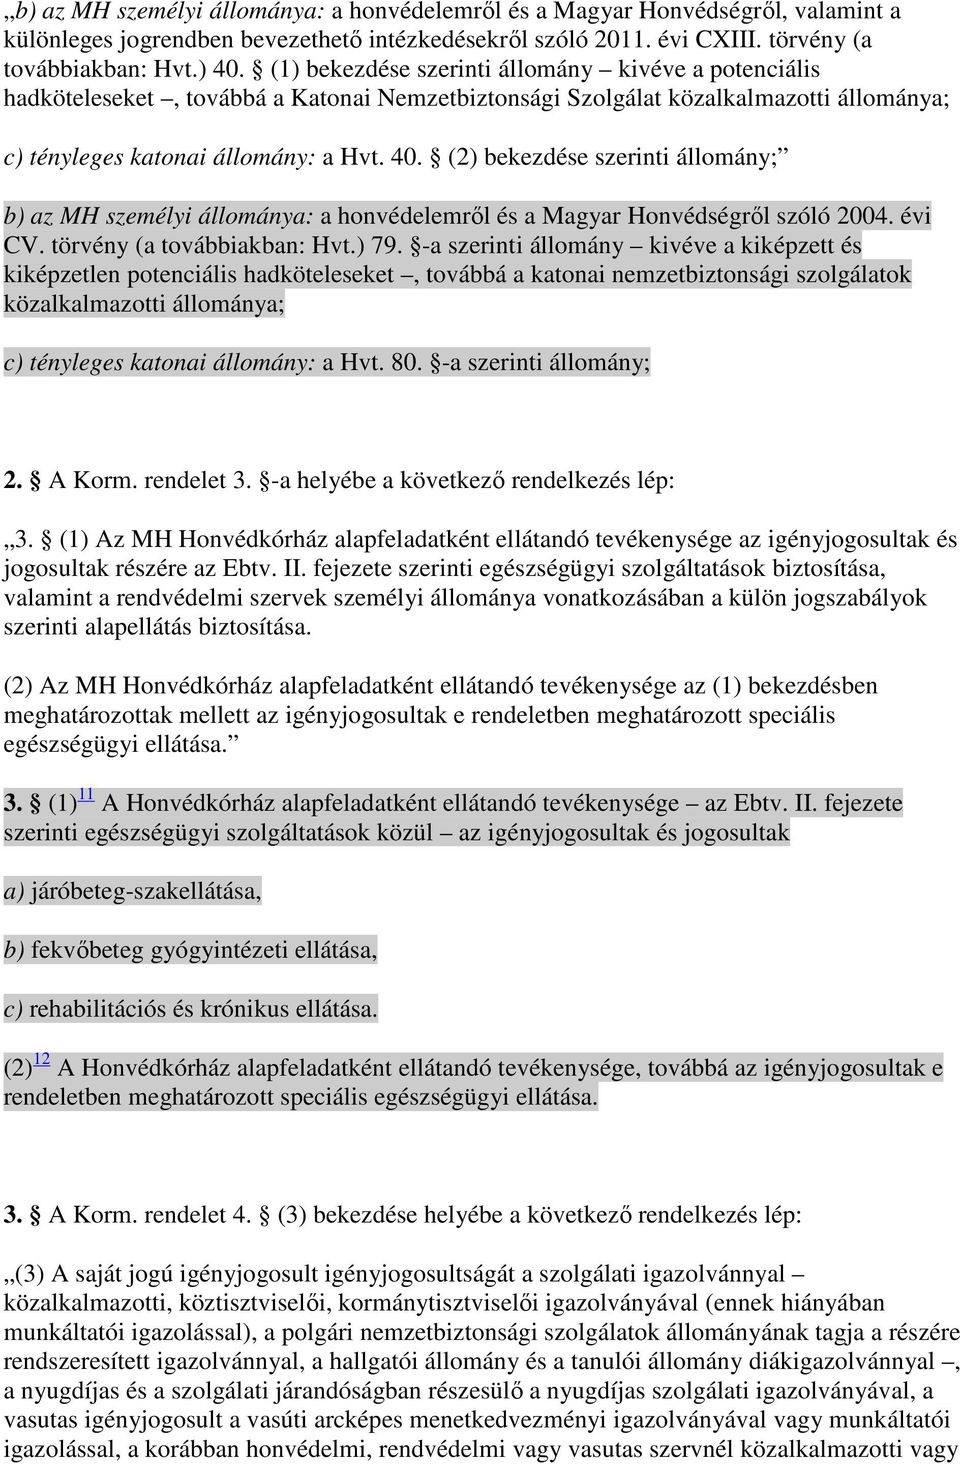 (2) bekezdése szerinti állomány; b) az MH személyi állománya: a honvédelemrıl és a Magyar Honvédségrıl szóló 2004. évi CV. törvény (a továbbiakban: Hvt.) 79.